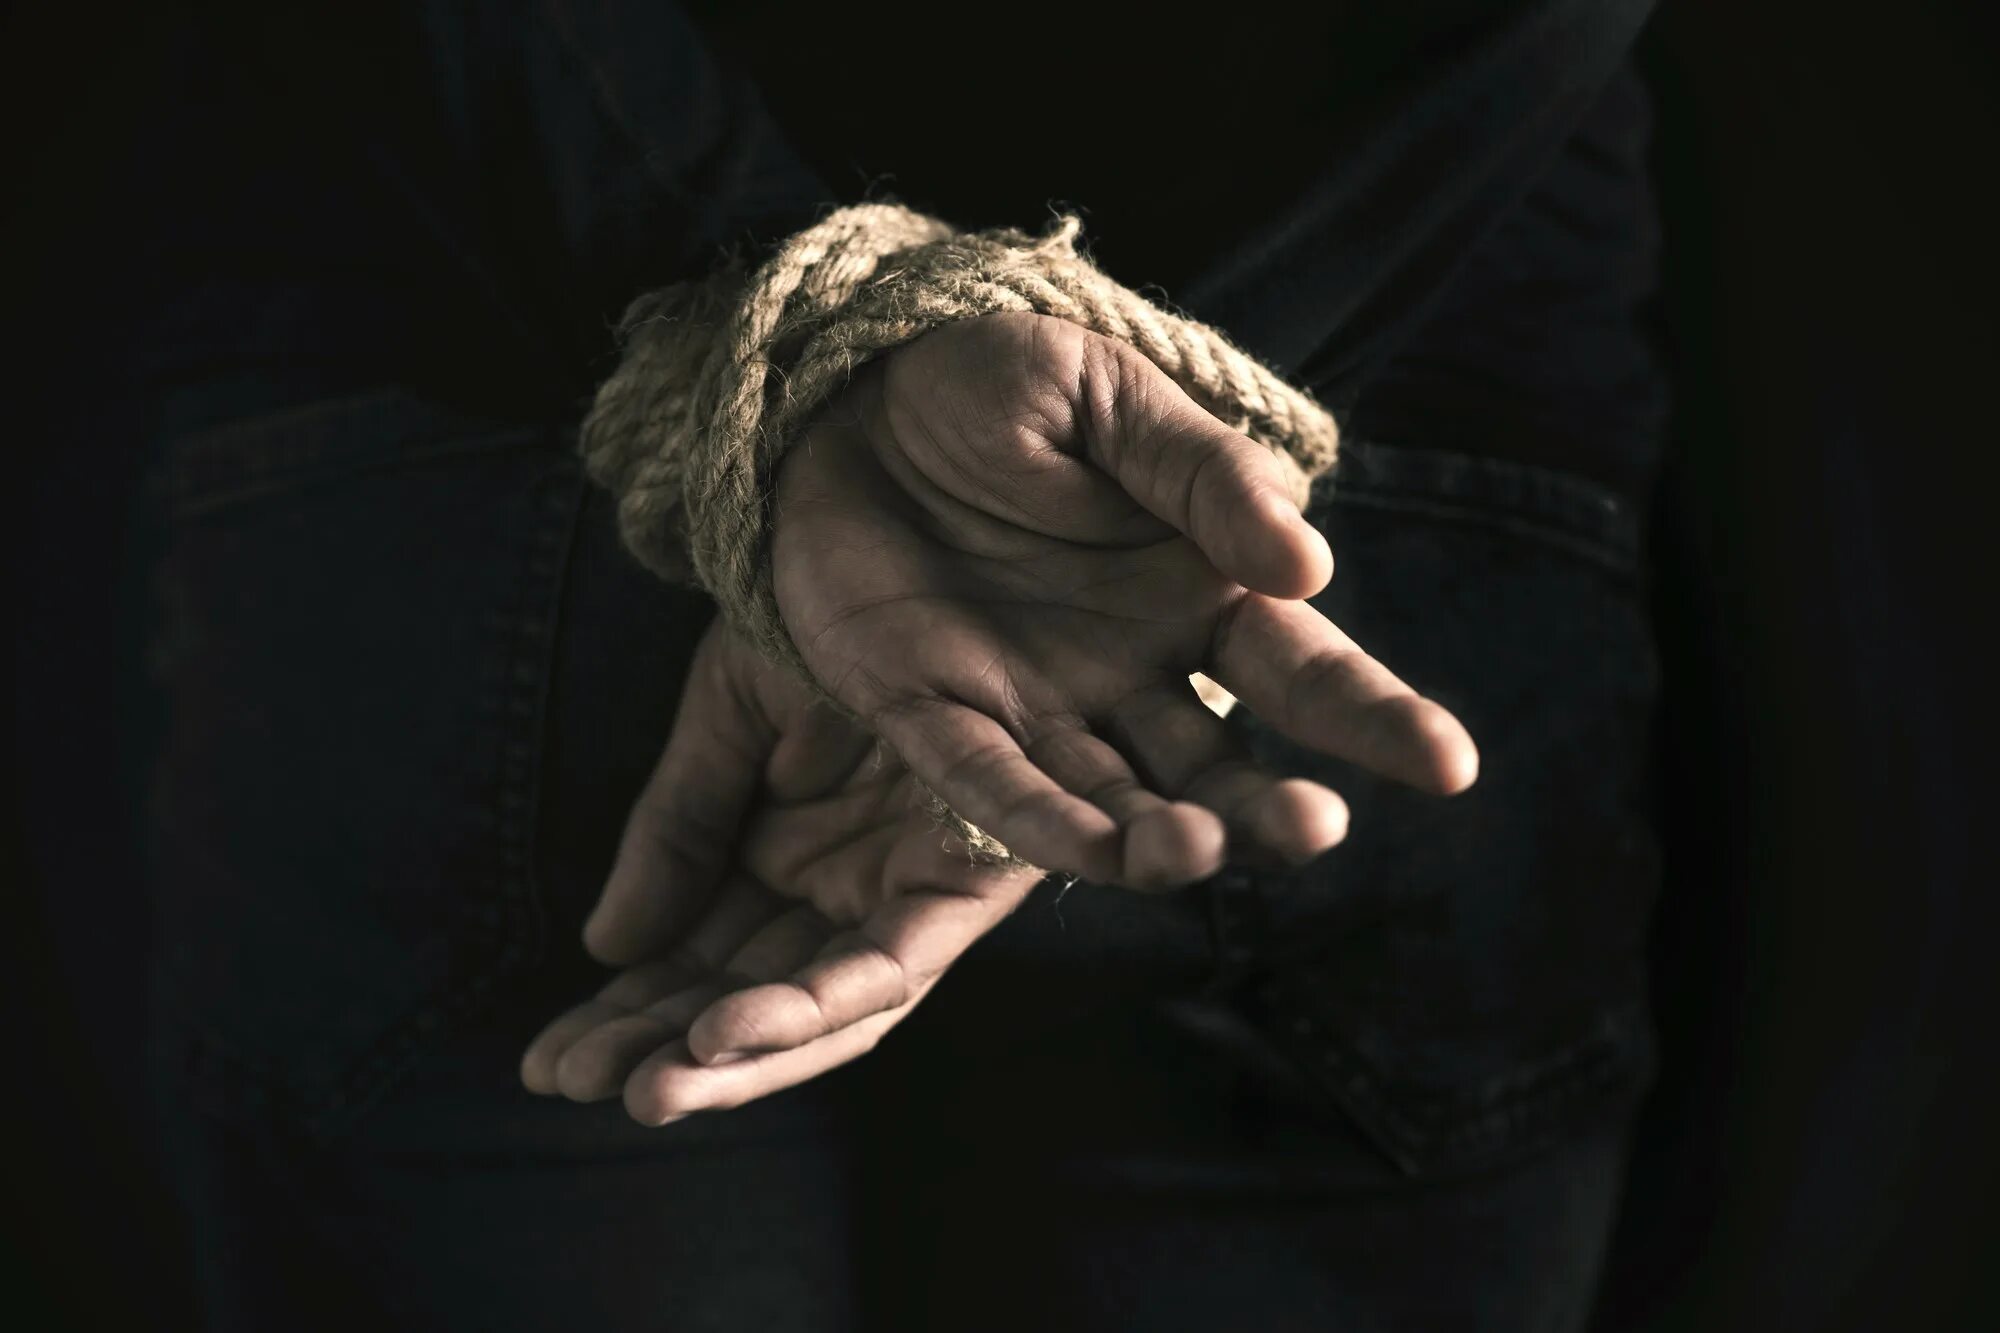 Примеры похищения человека. Мужчина со связанными руками. Руки связаны. Связанные запястья. Мужские руки связаны.